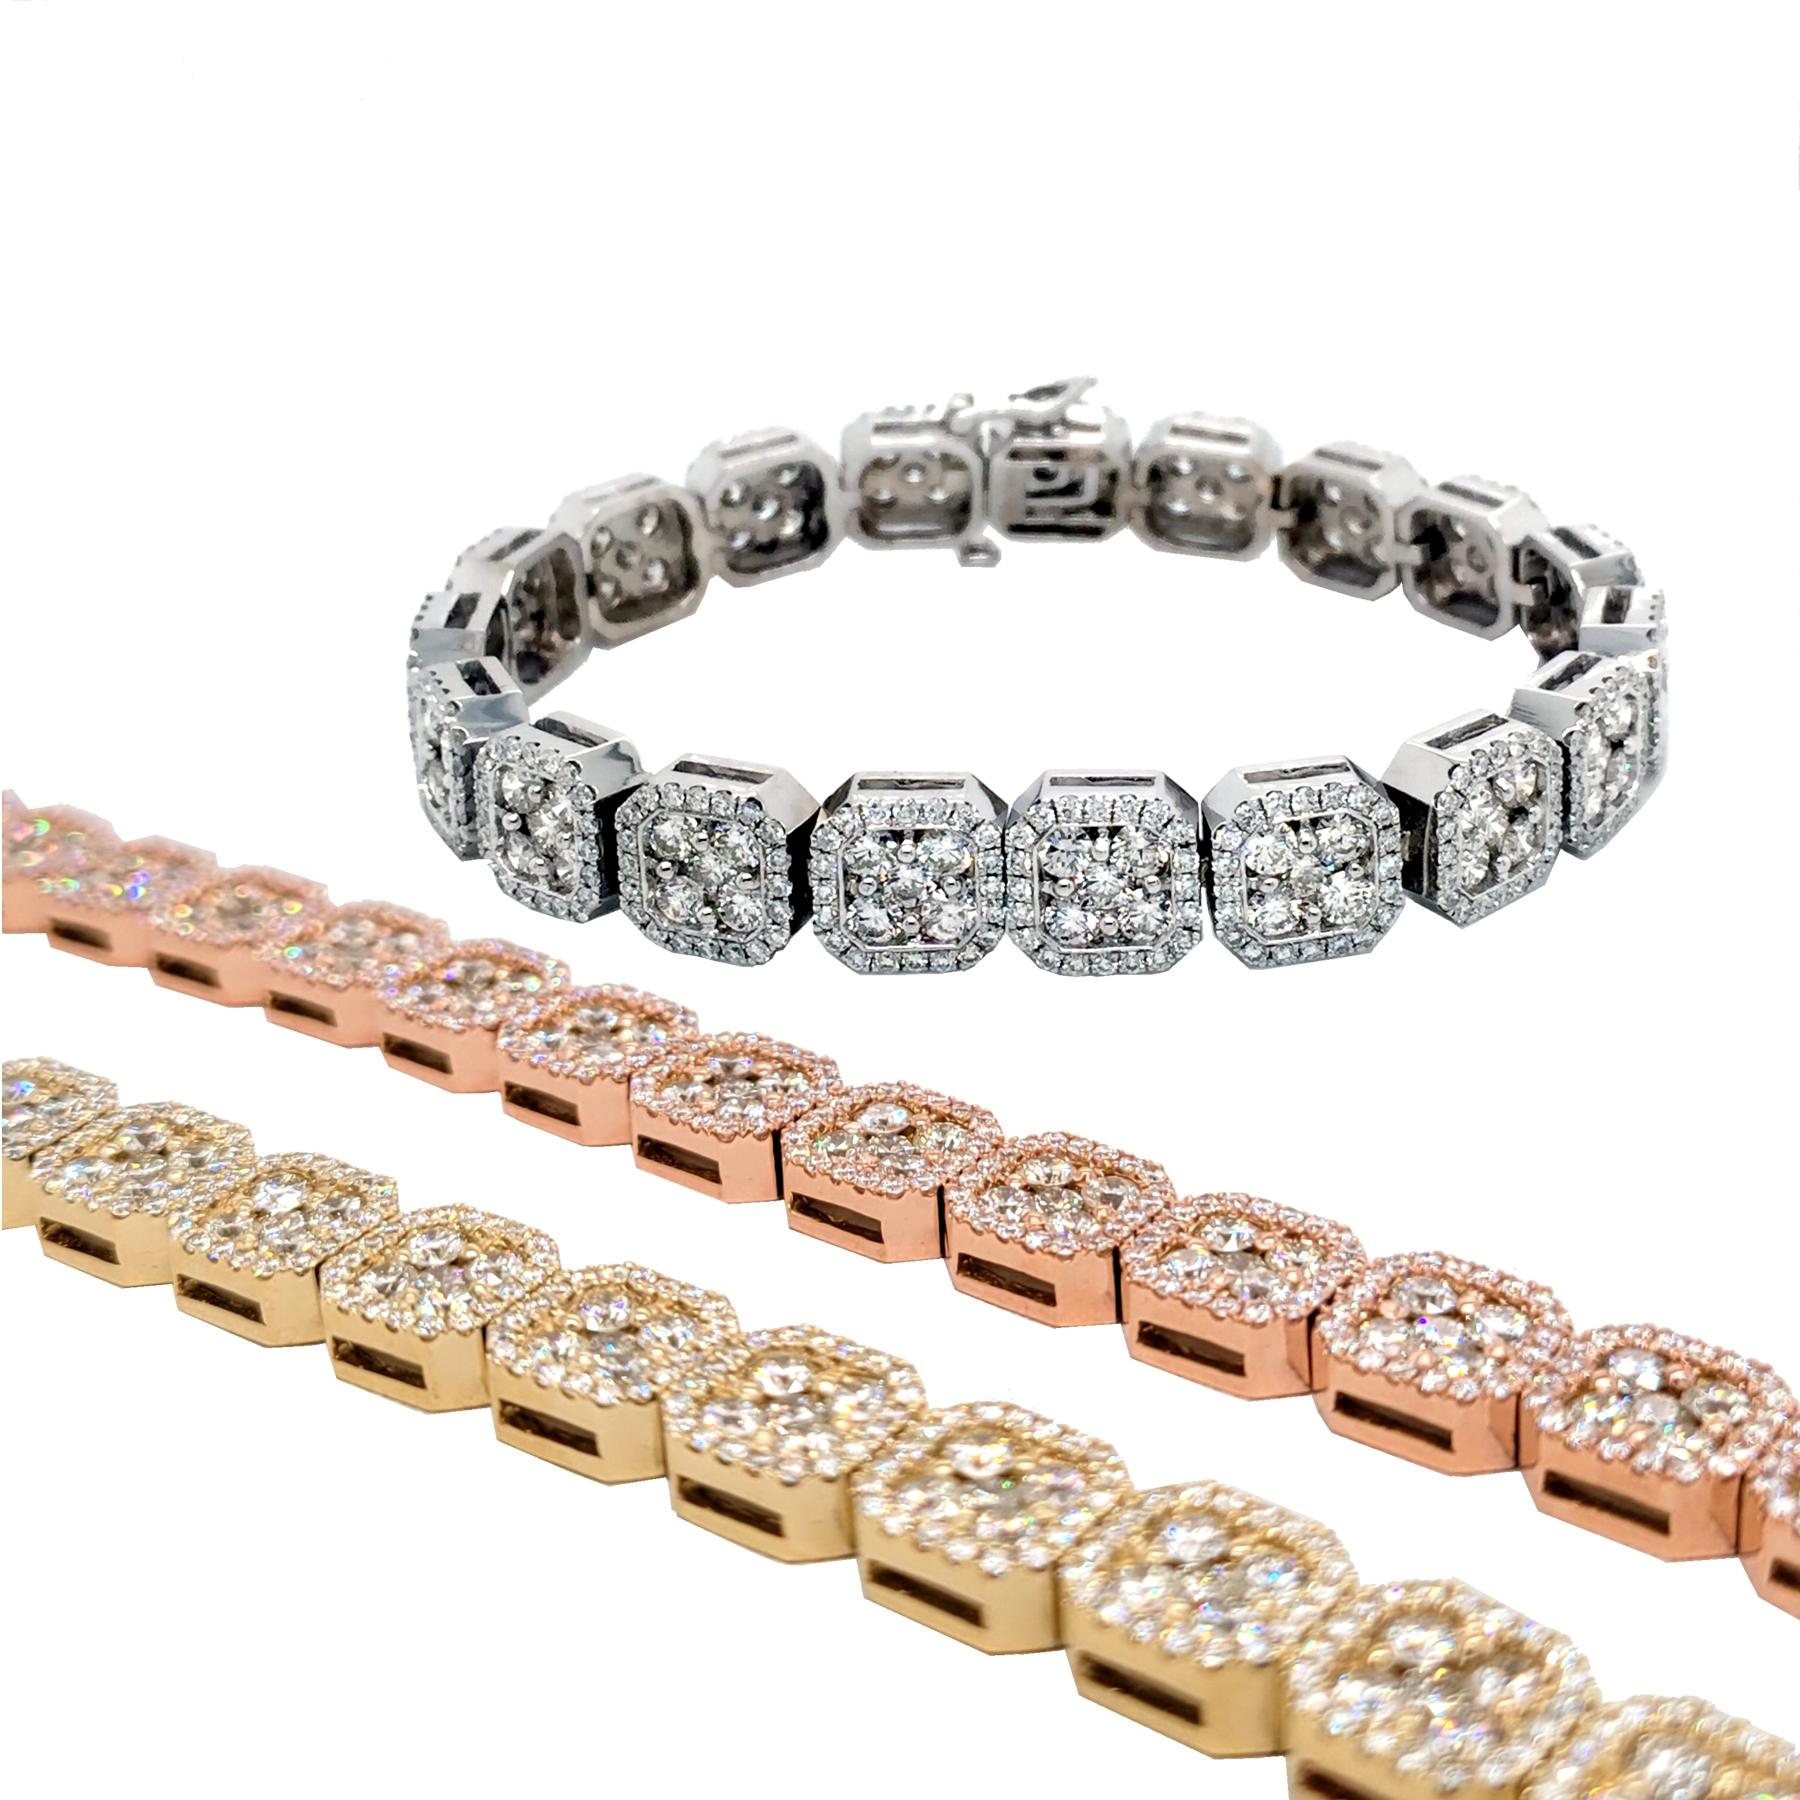 10.65 Carat Pave Set 14K Gold Diamond Tennis Bracelet with Cluster Set Links For Sale 2